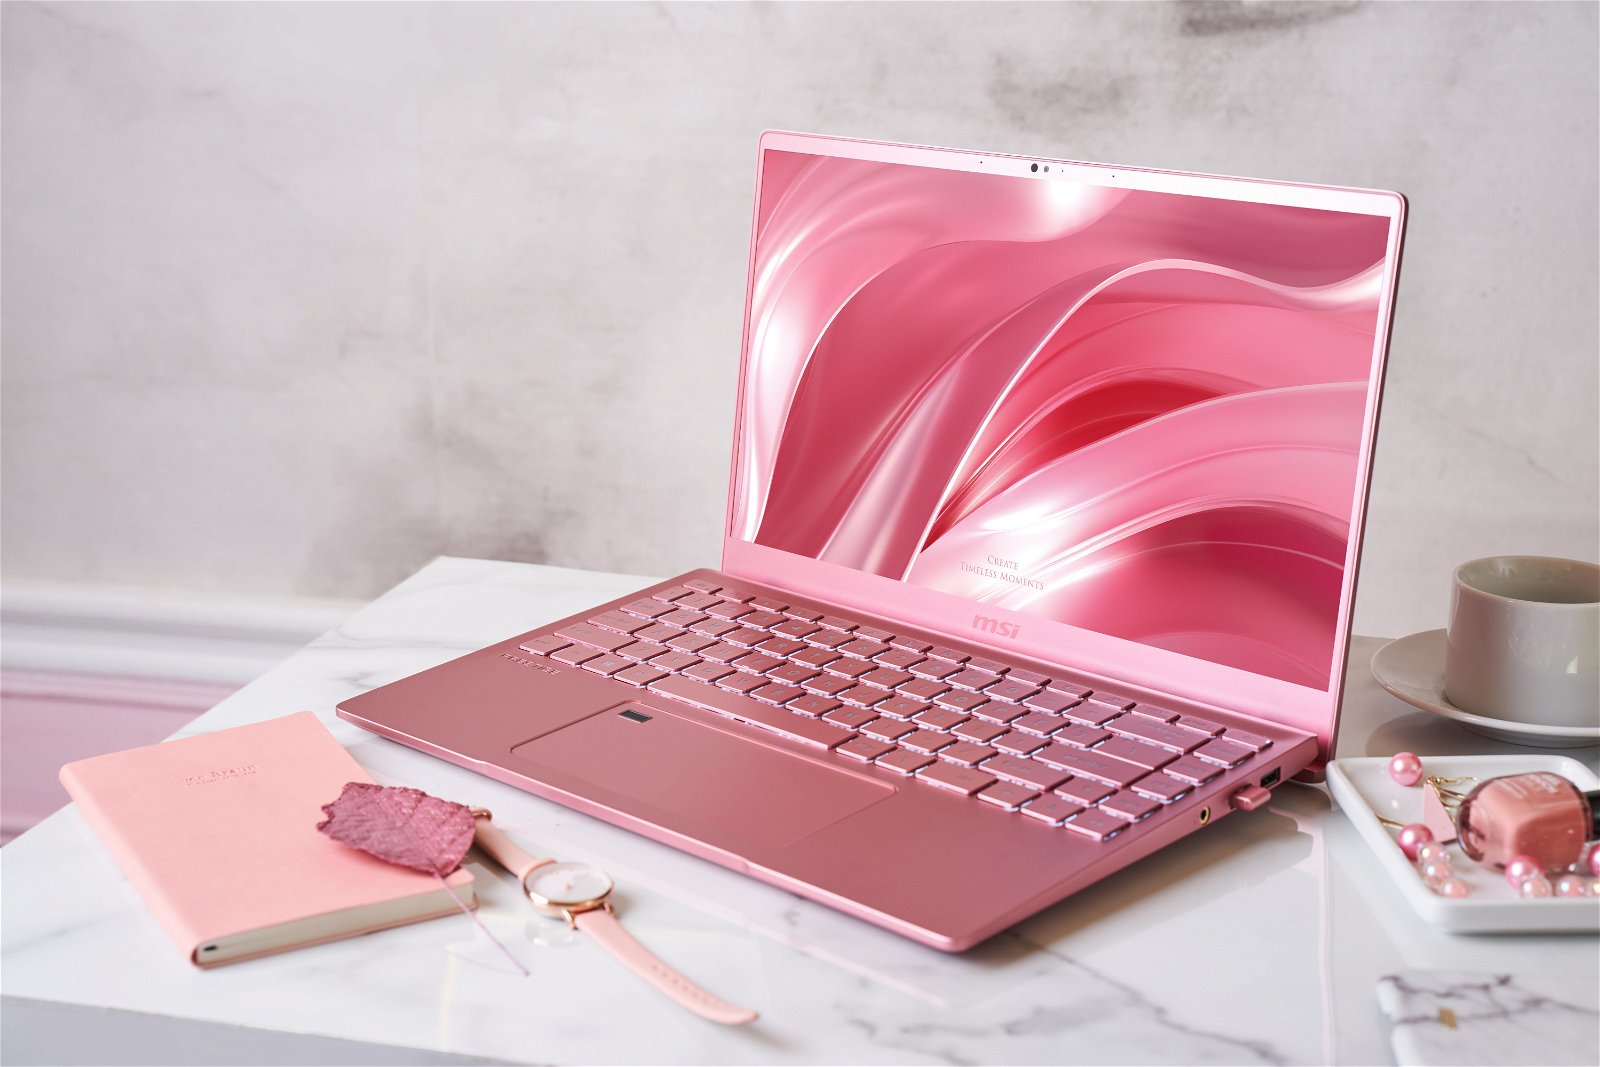 MSI presenta il laptop Prestige 14 Pink Rose